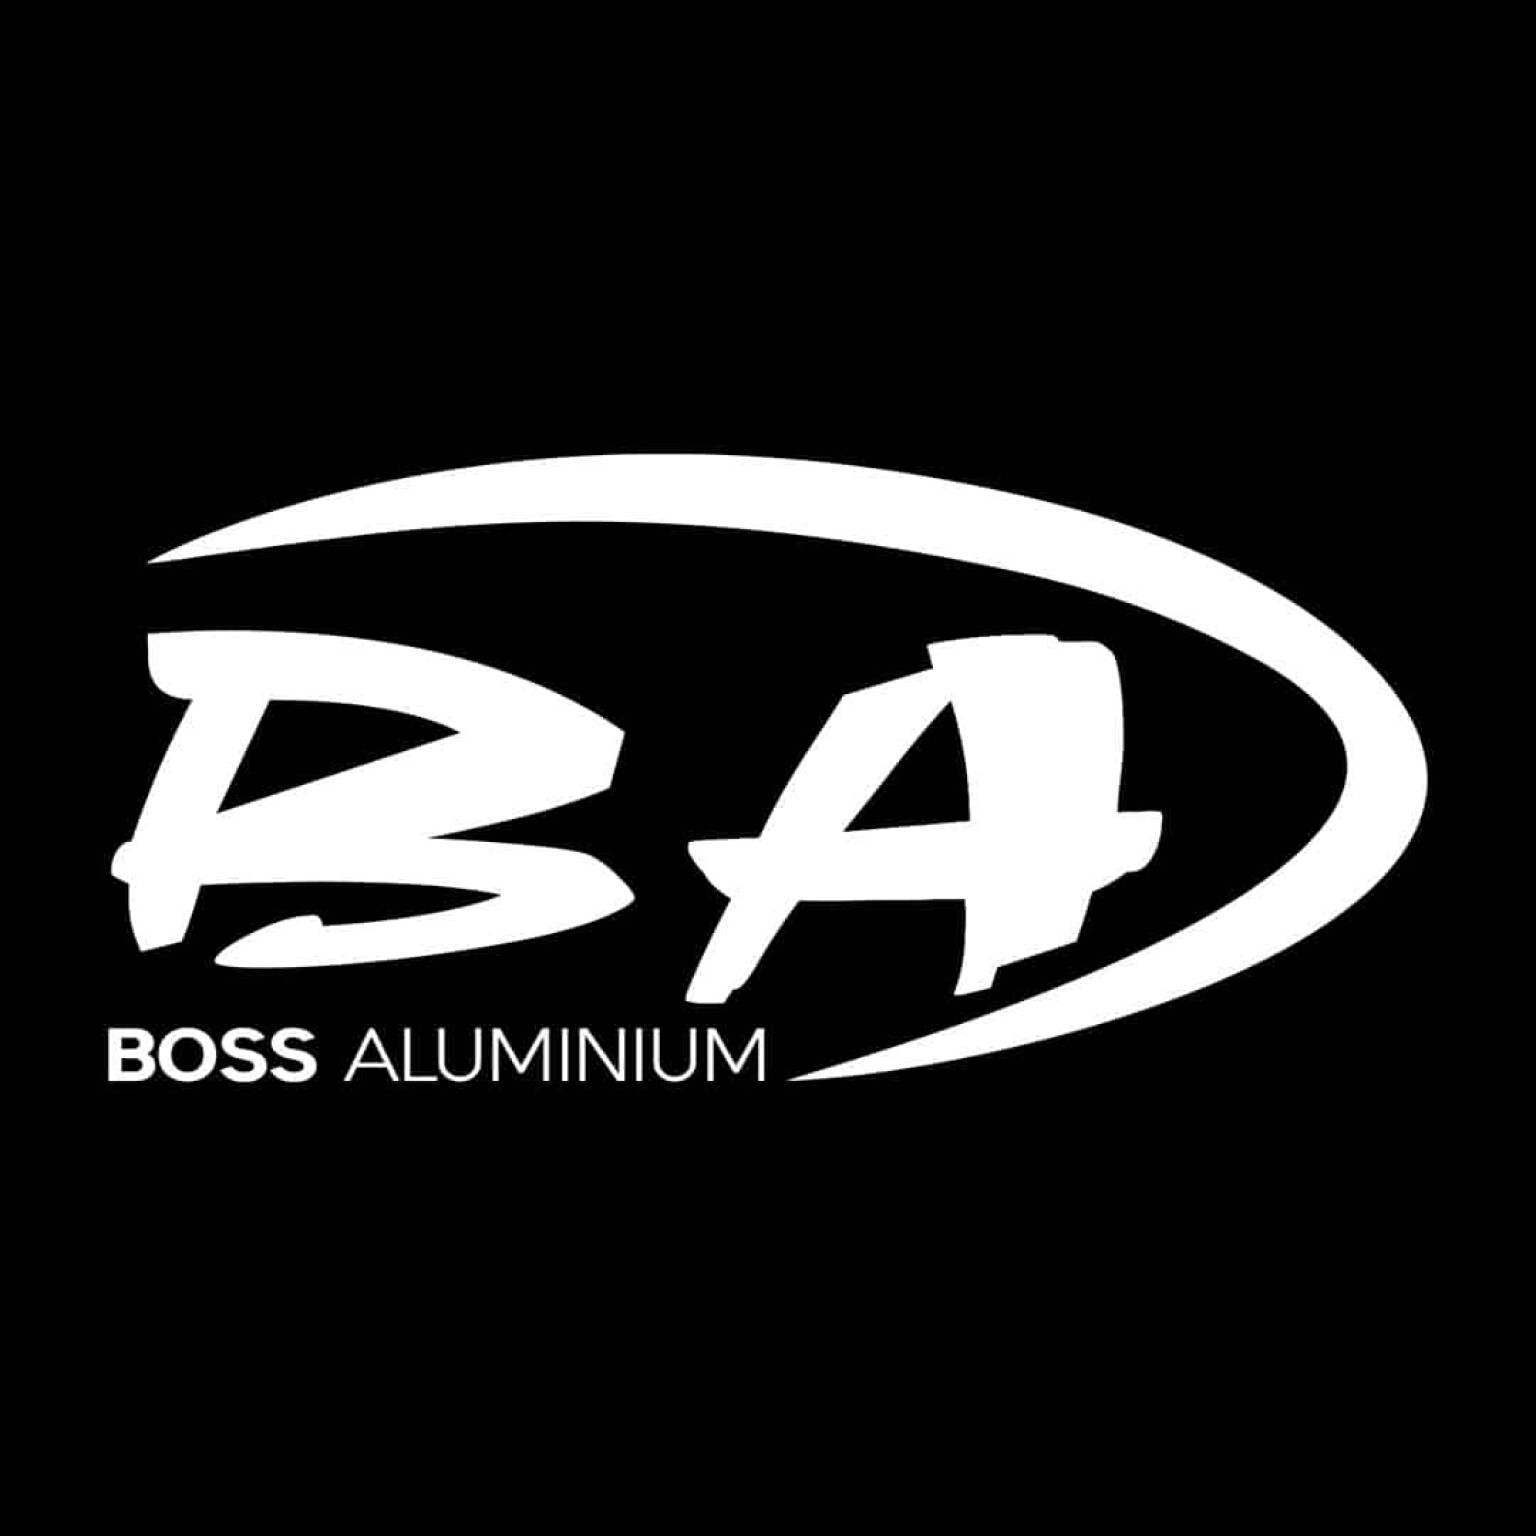 b64b1064/boss aluminium logo 2 jpg